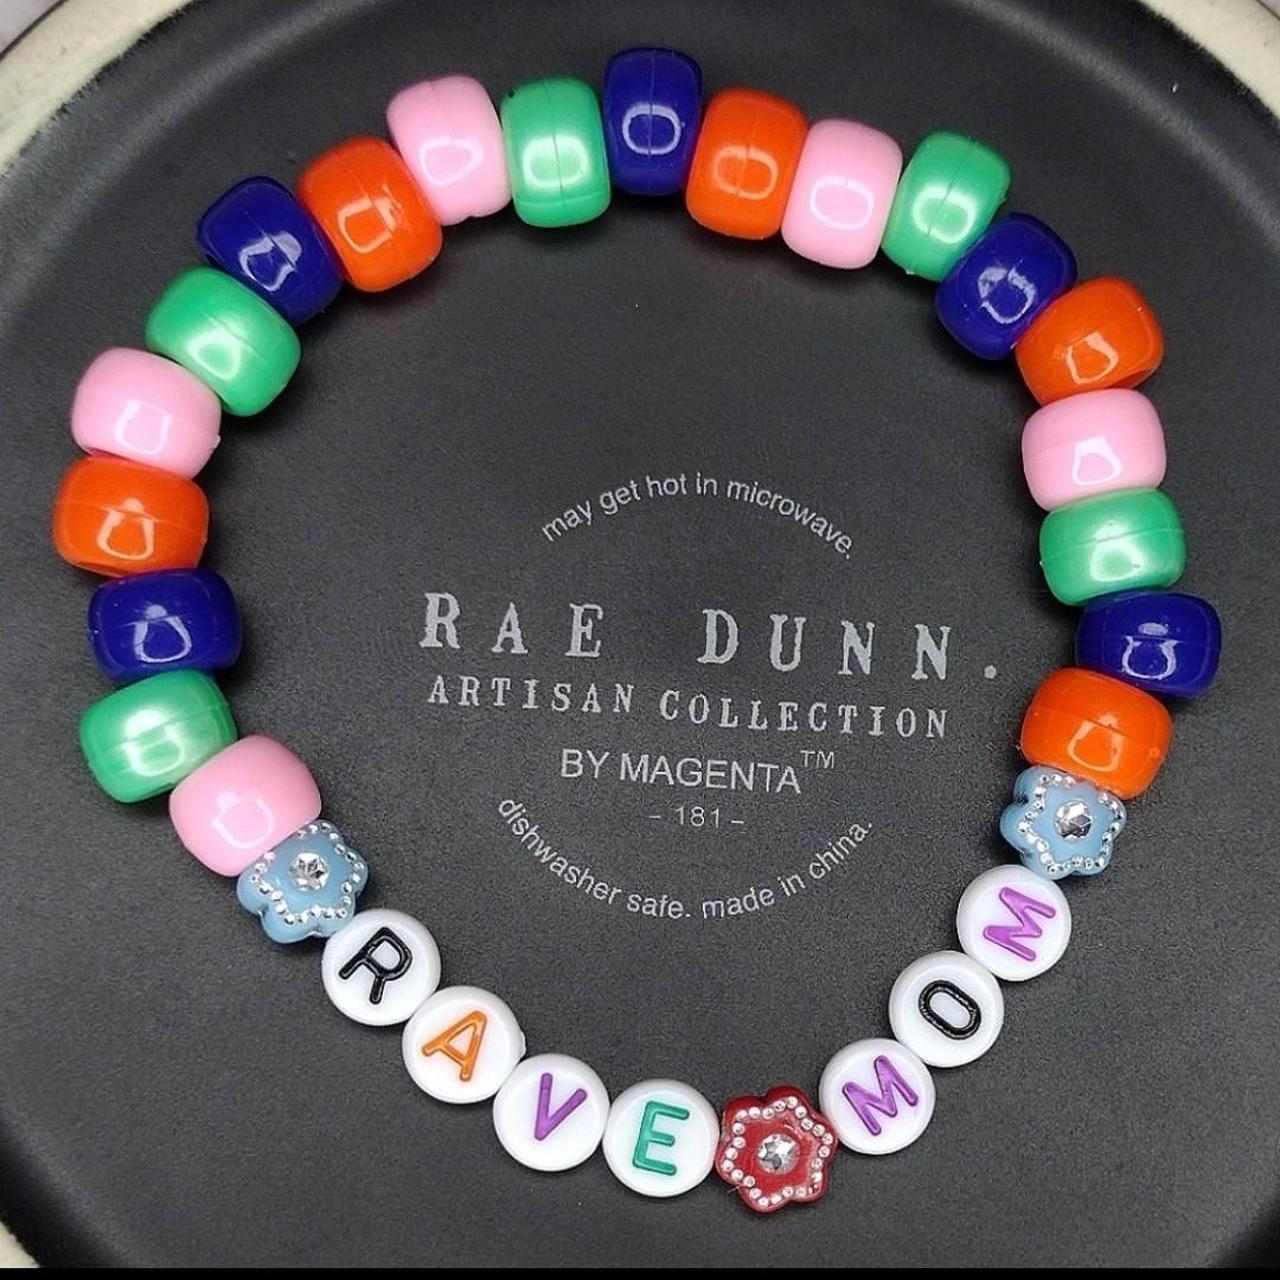 Kandi rave bracelets are 10-15$ each - Depop